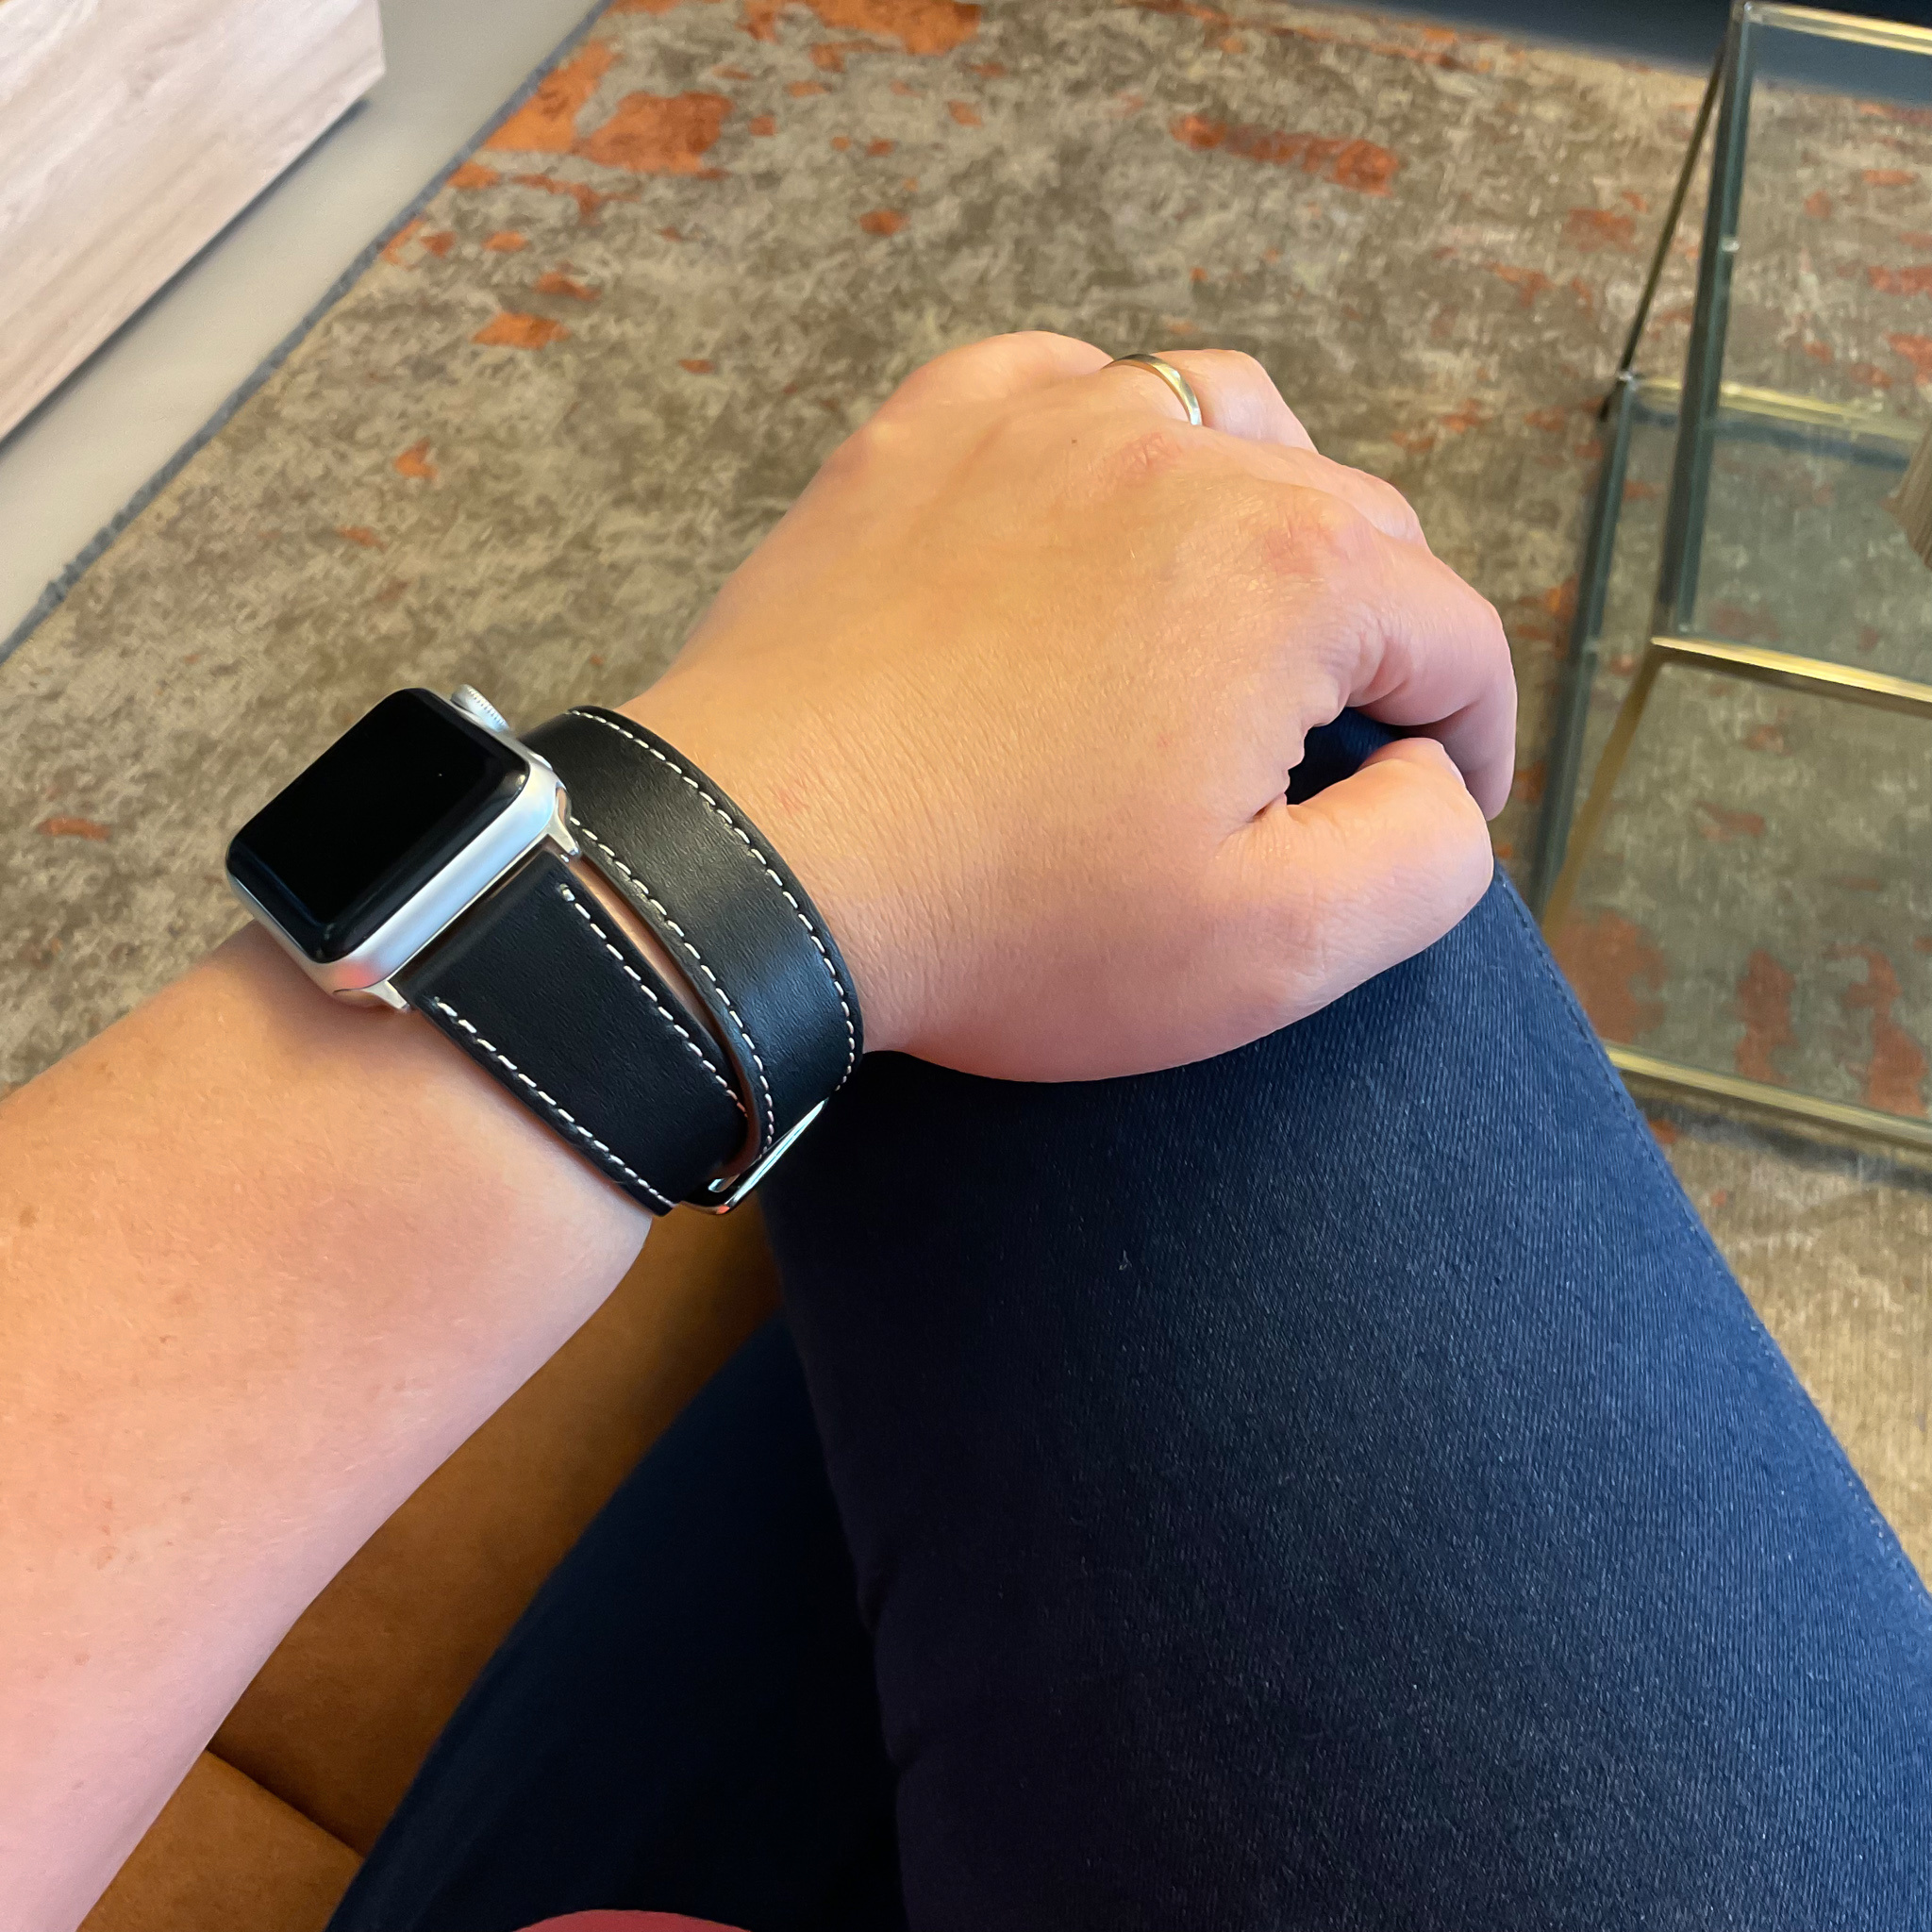 Cinturino ad anello lungo in pelle per Apple Watch - nero